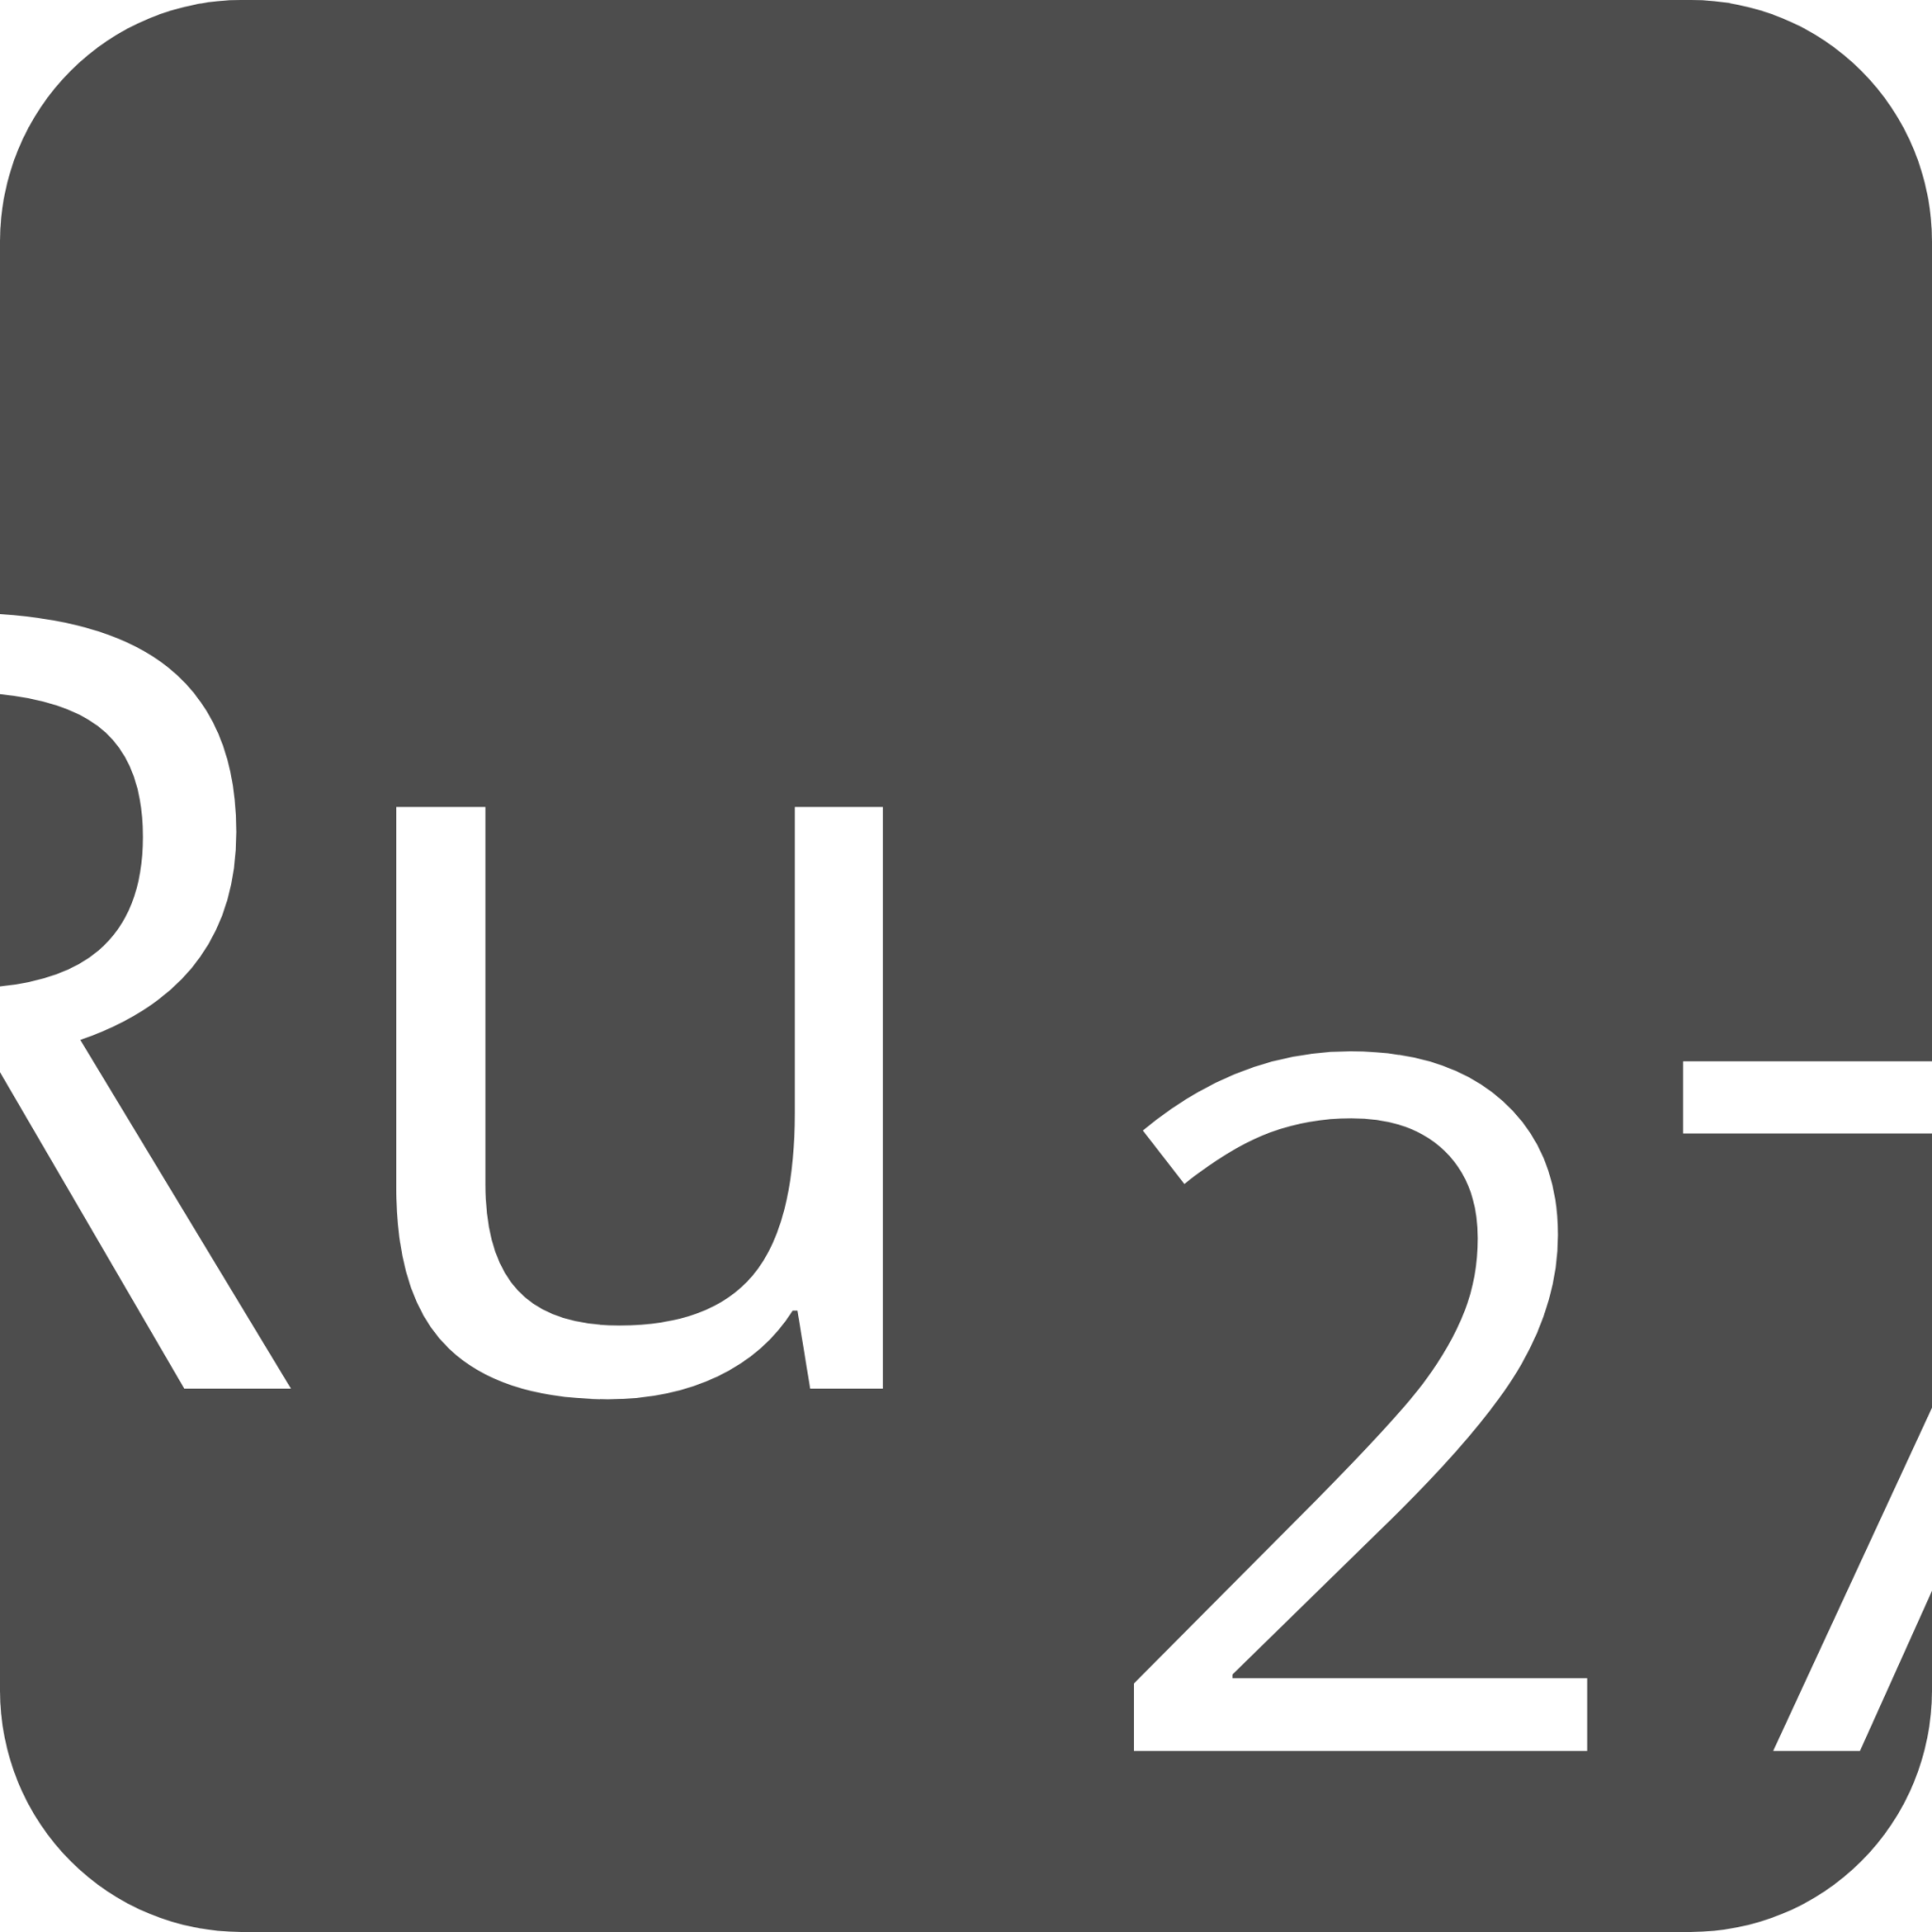 indicator keyboard Ru 27 icon